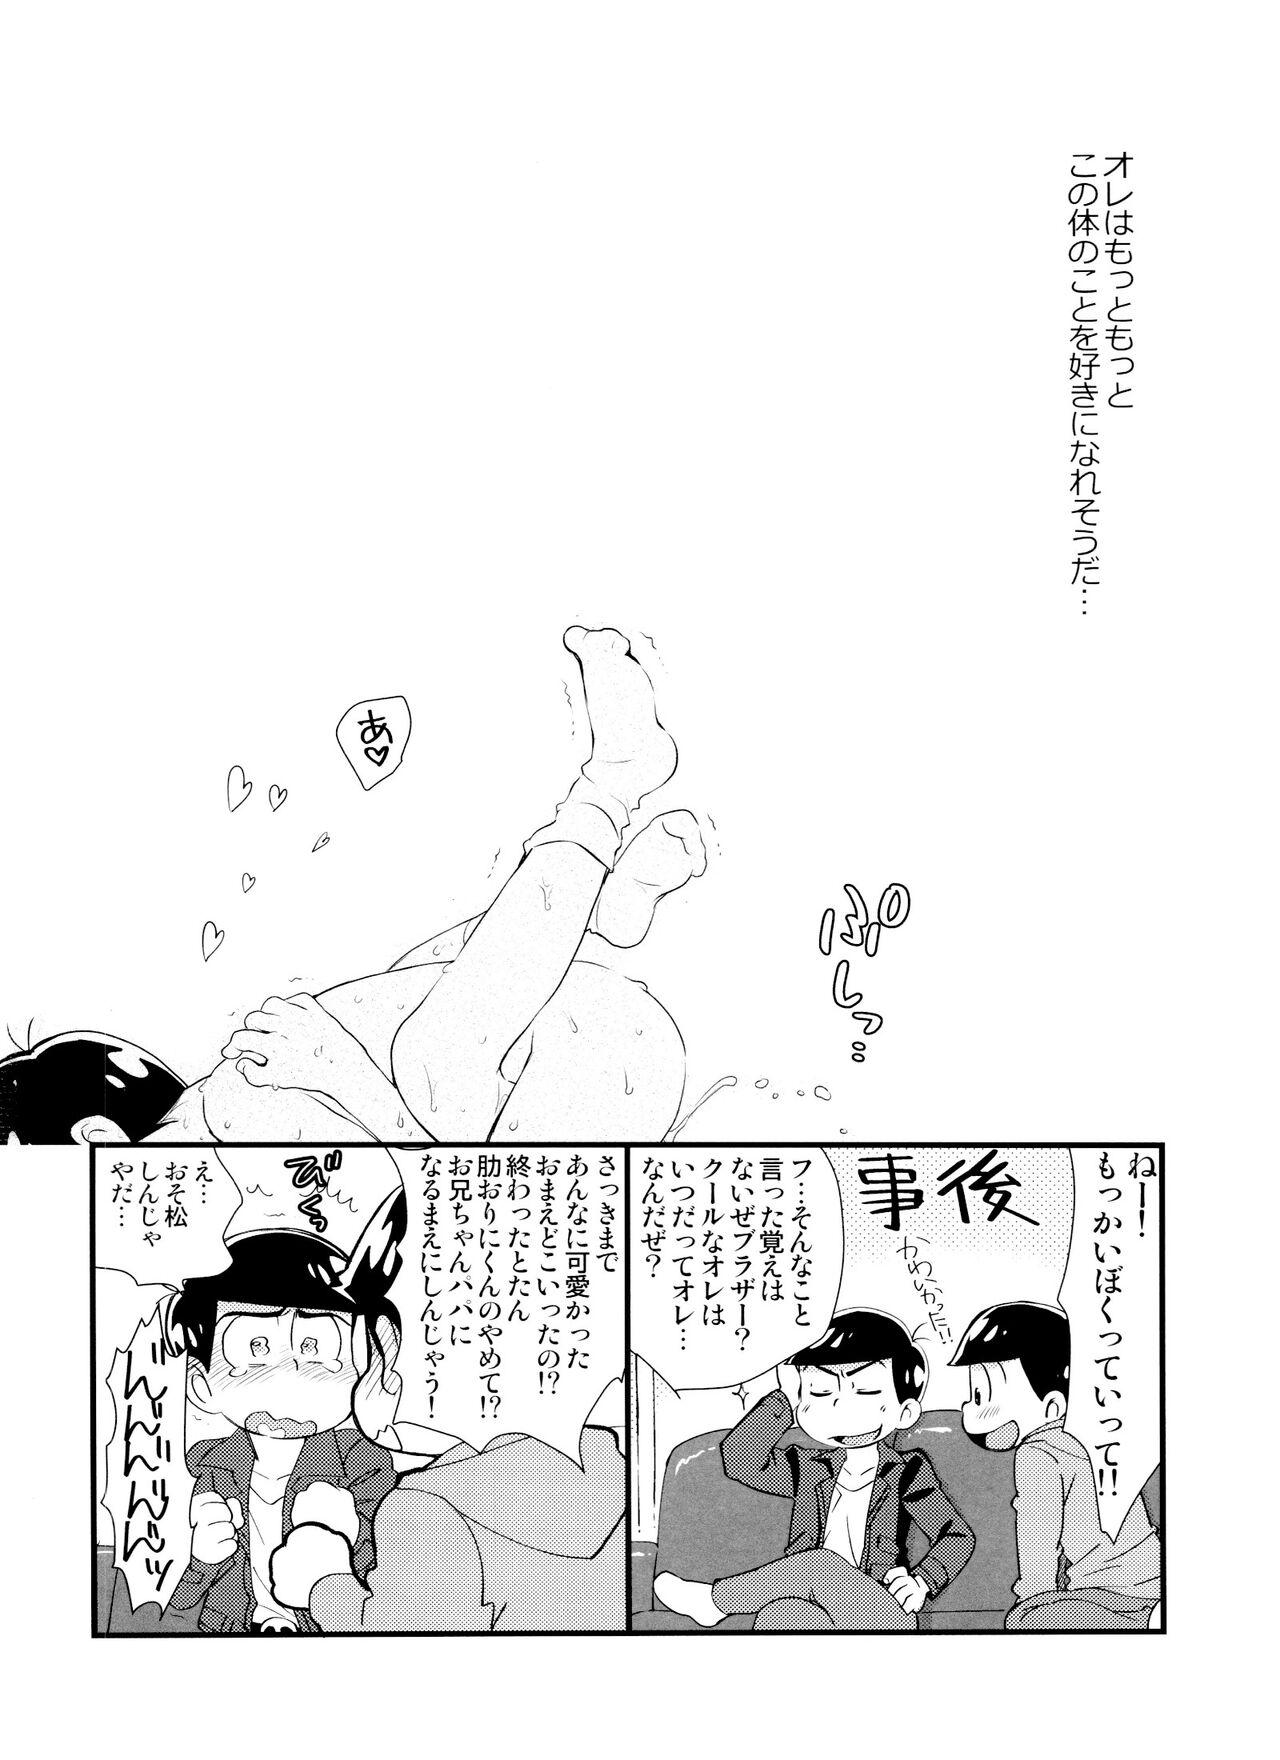 Chichona Futanari Karamatsu-kun wa mada shojodesu - Osomatsu san Speculum - Page 45